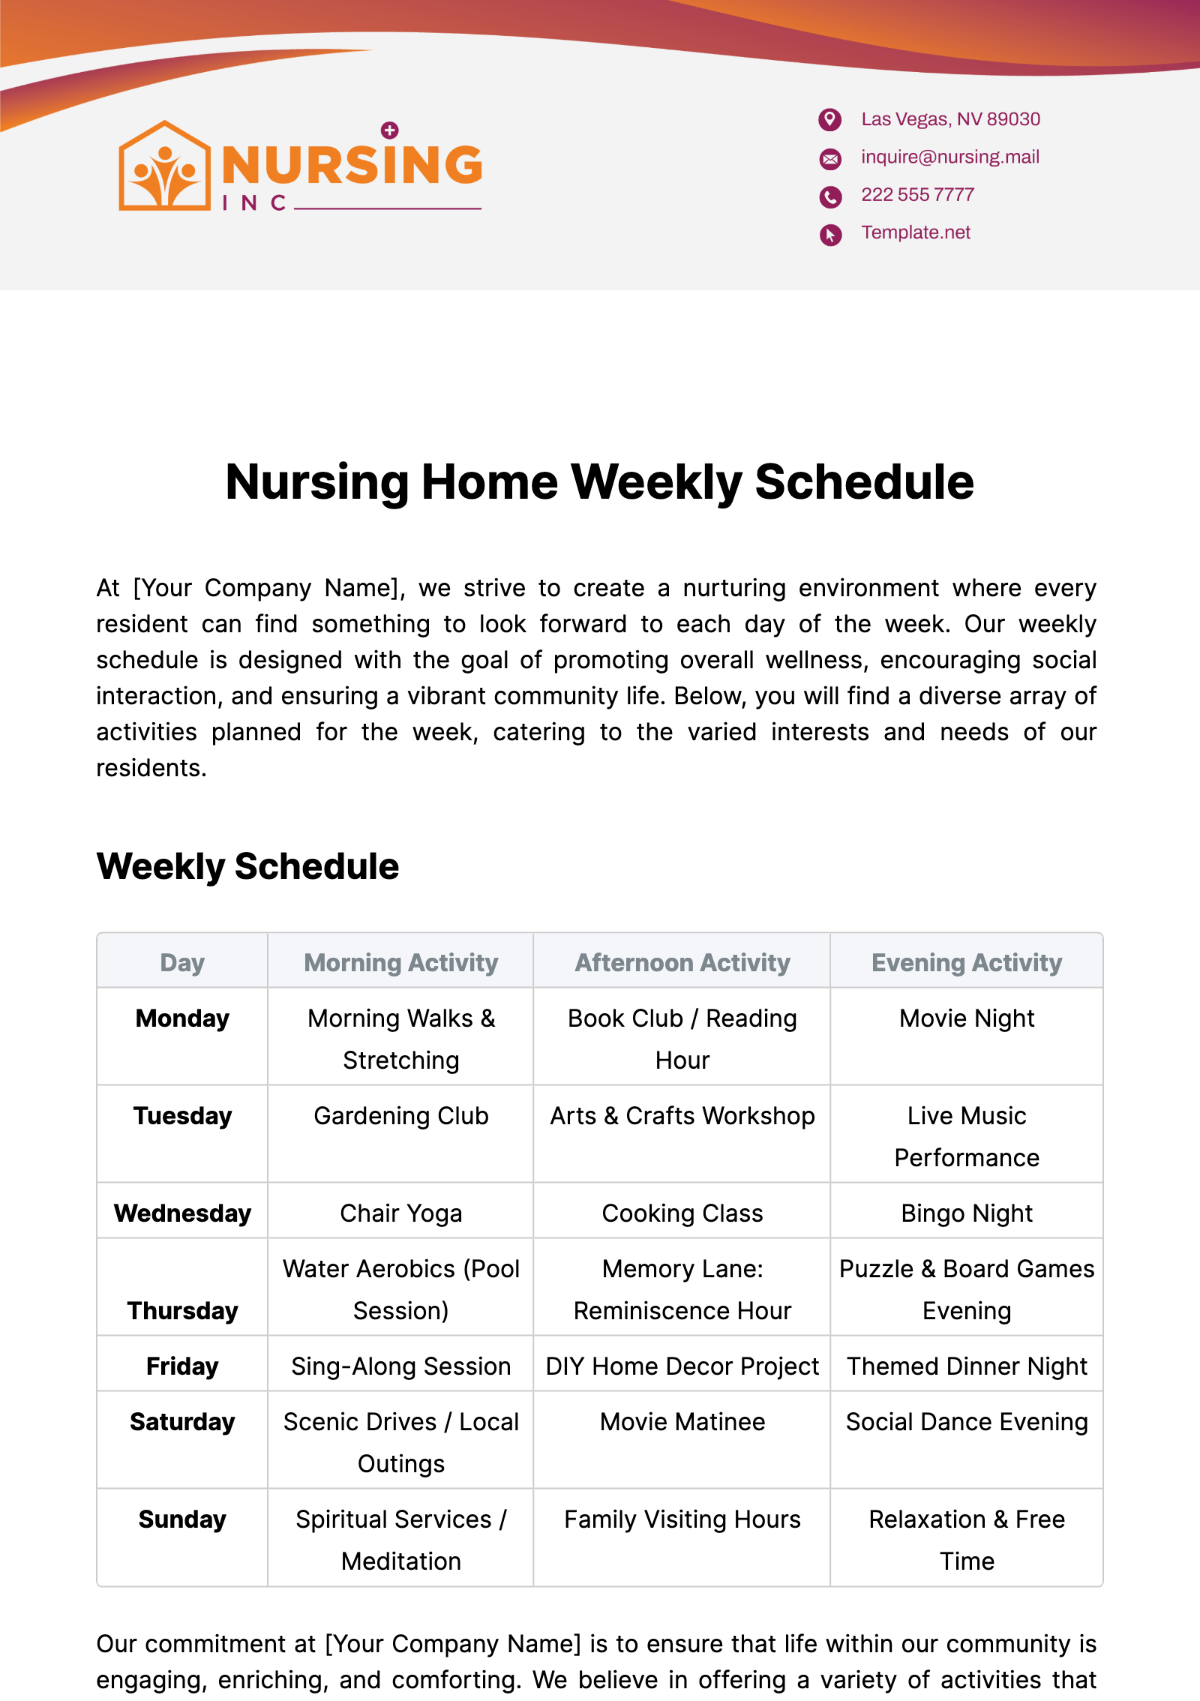 Nursing Home Weekly Schedule Template